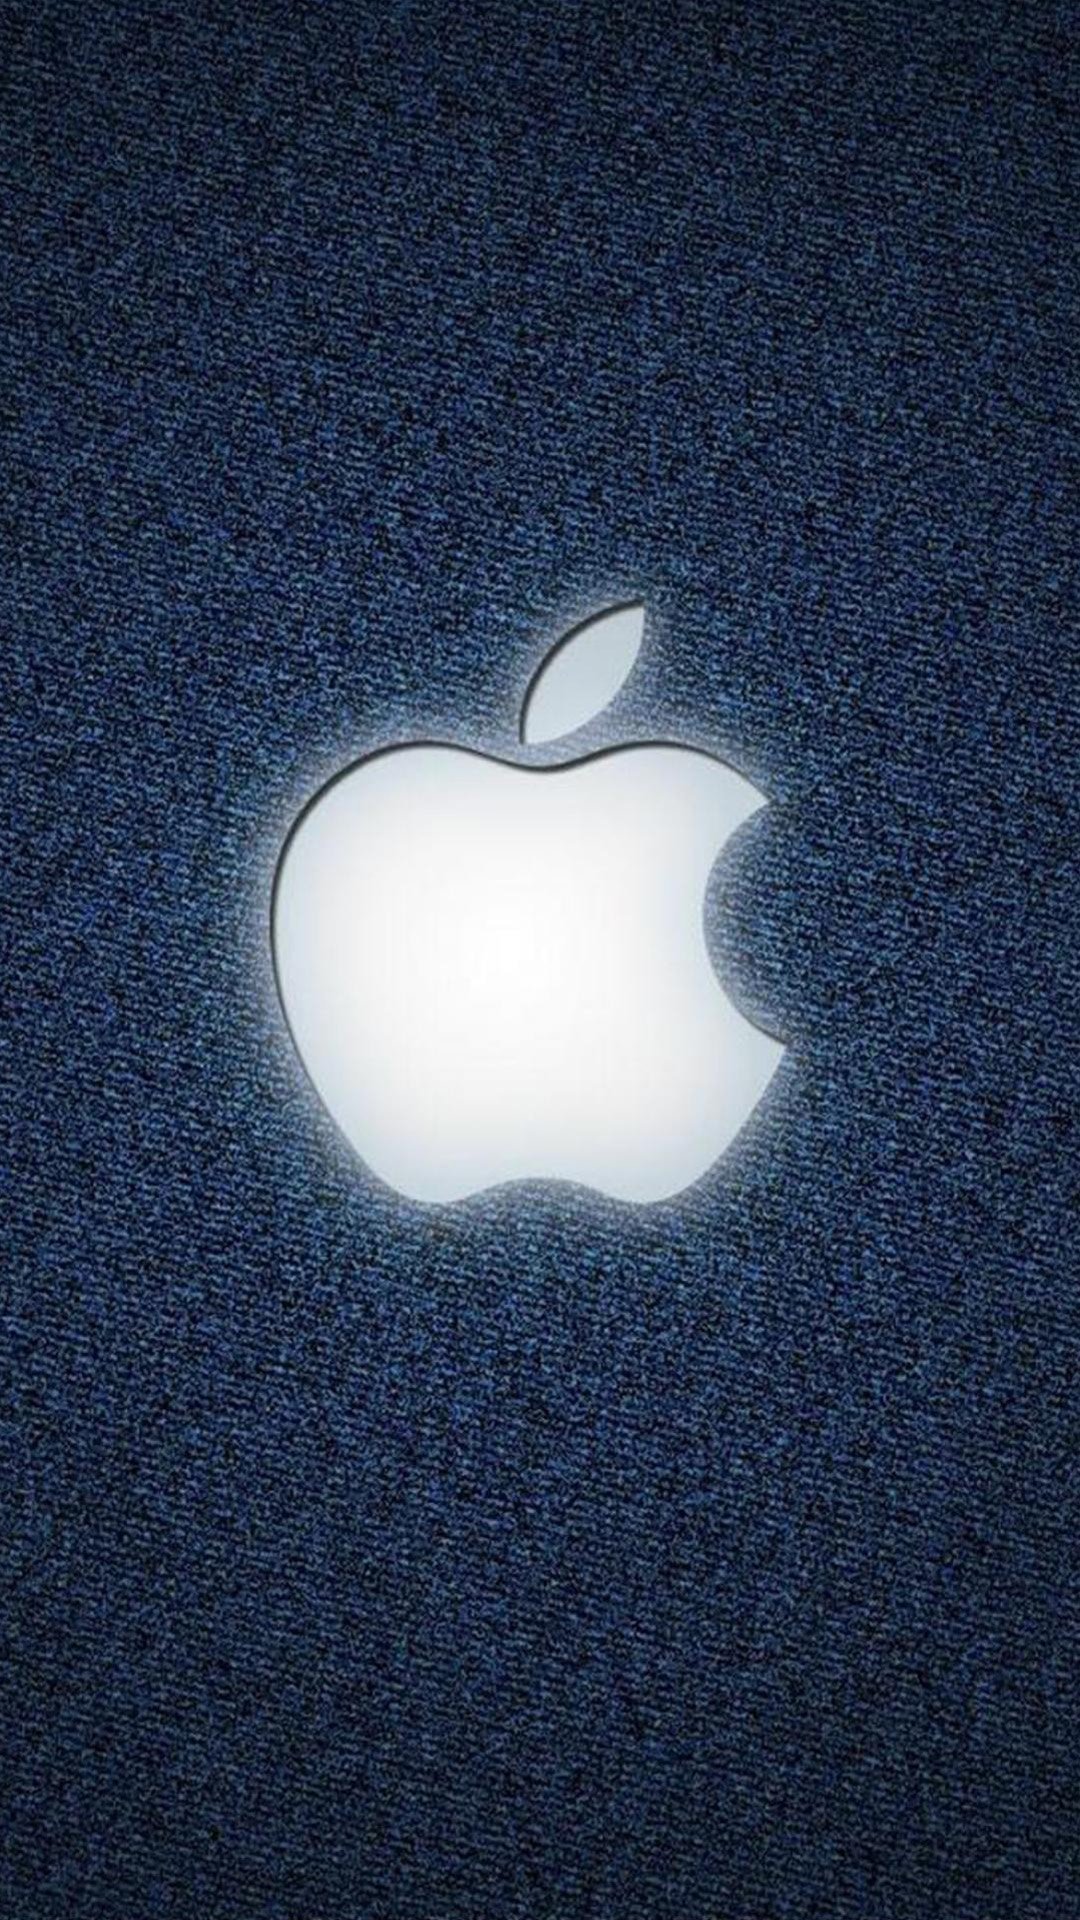 Телефон айфон яблоко. Логотип айфона. Яблоко Apple. Яблоко айфон. Изображение Apple.